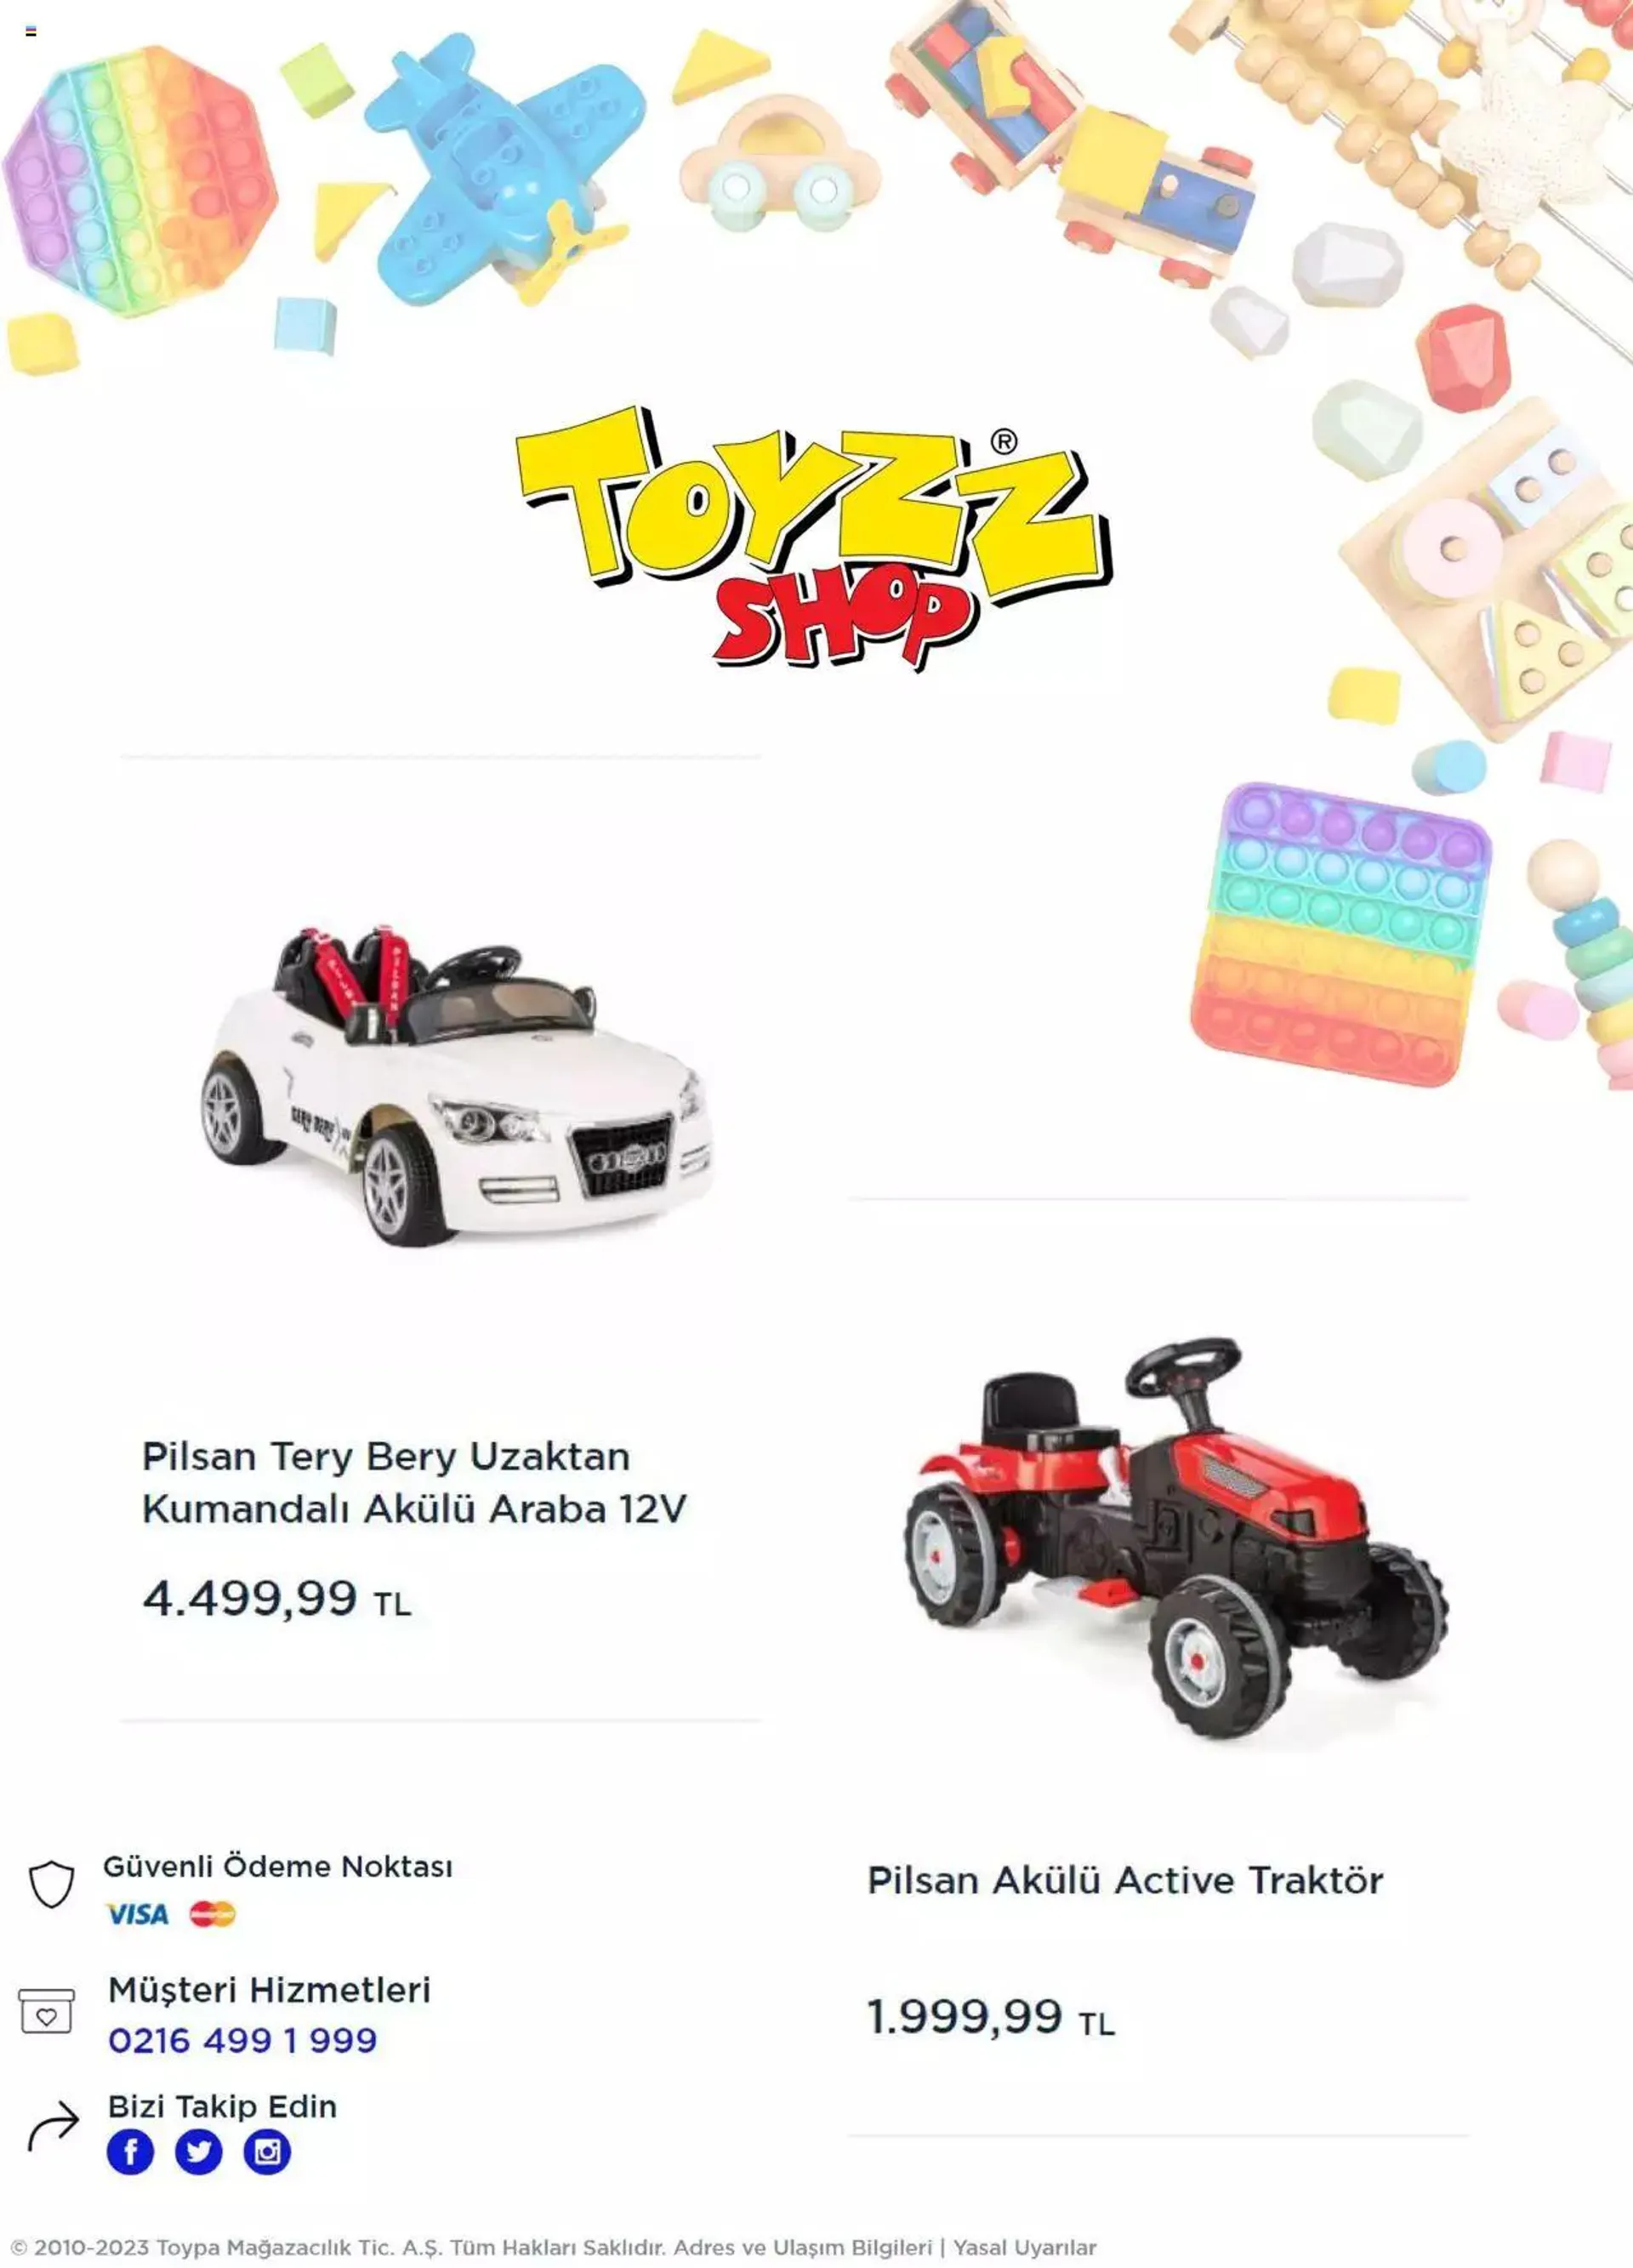 Toyzz Shop Katalog - 4